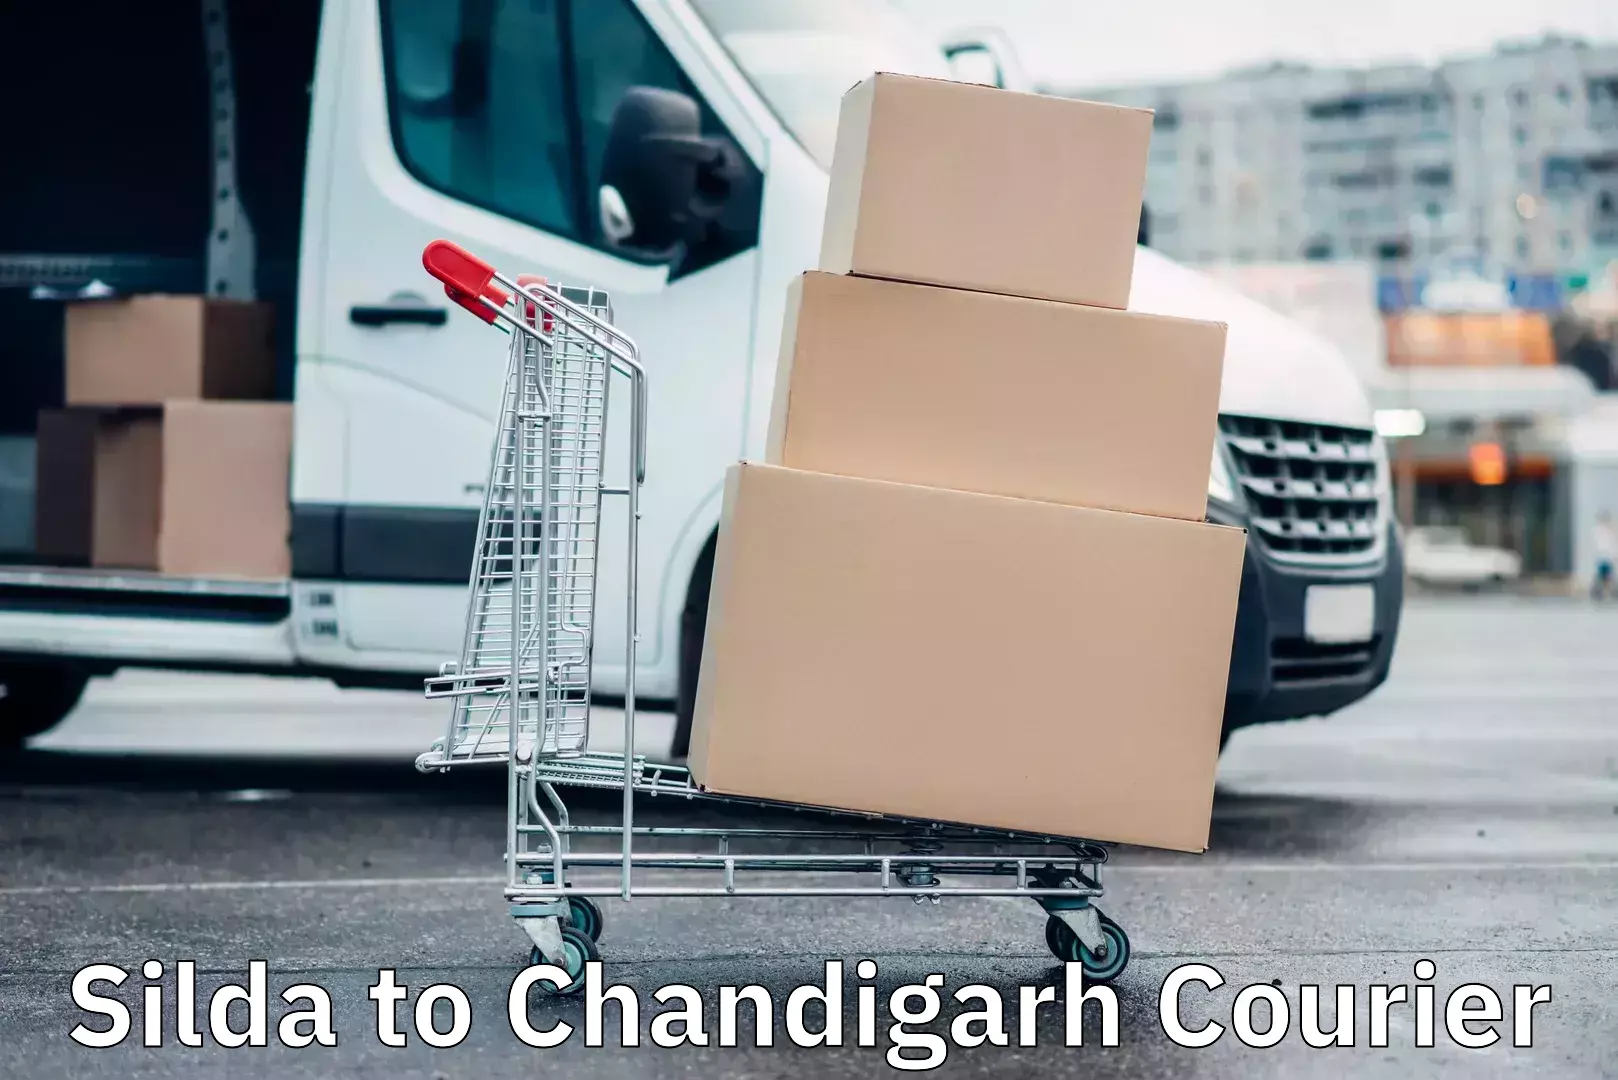 Efficient parcel tracking Silda to Chandigarh